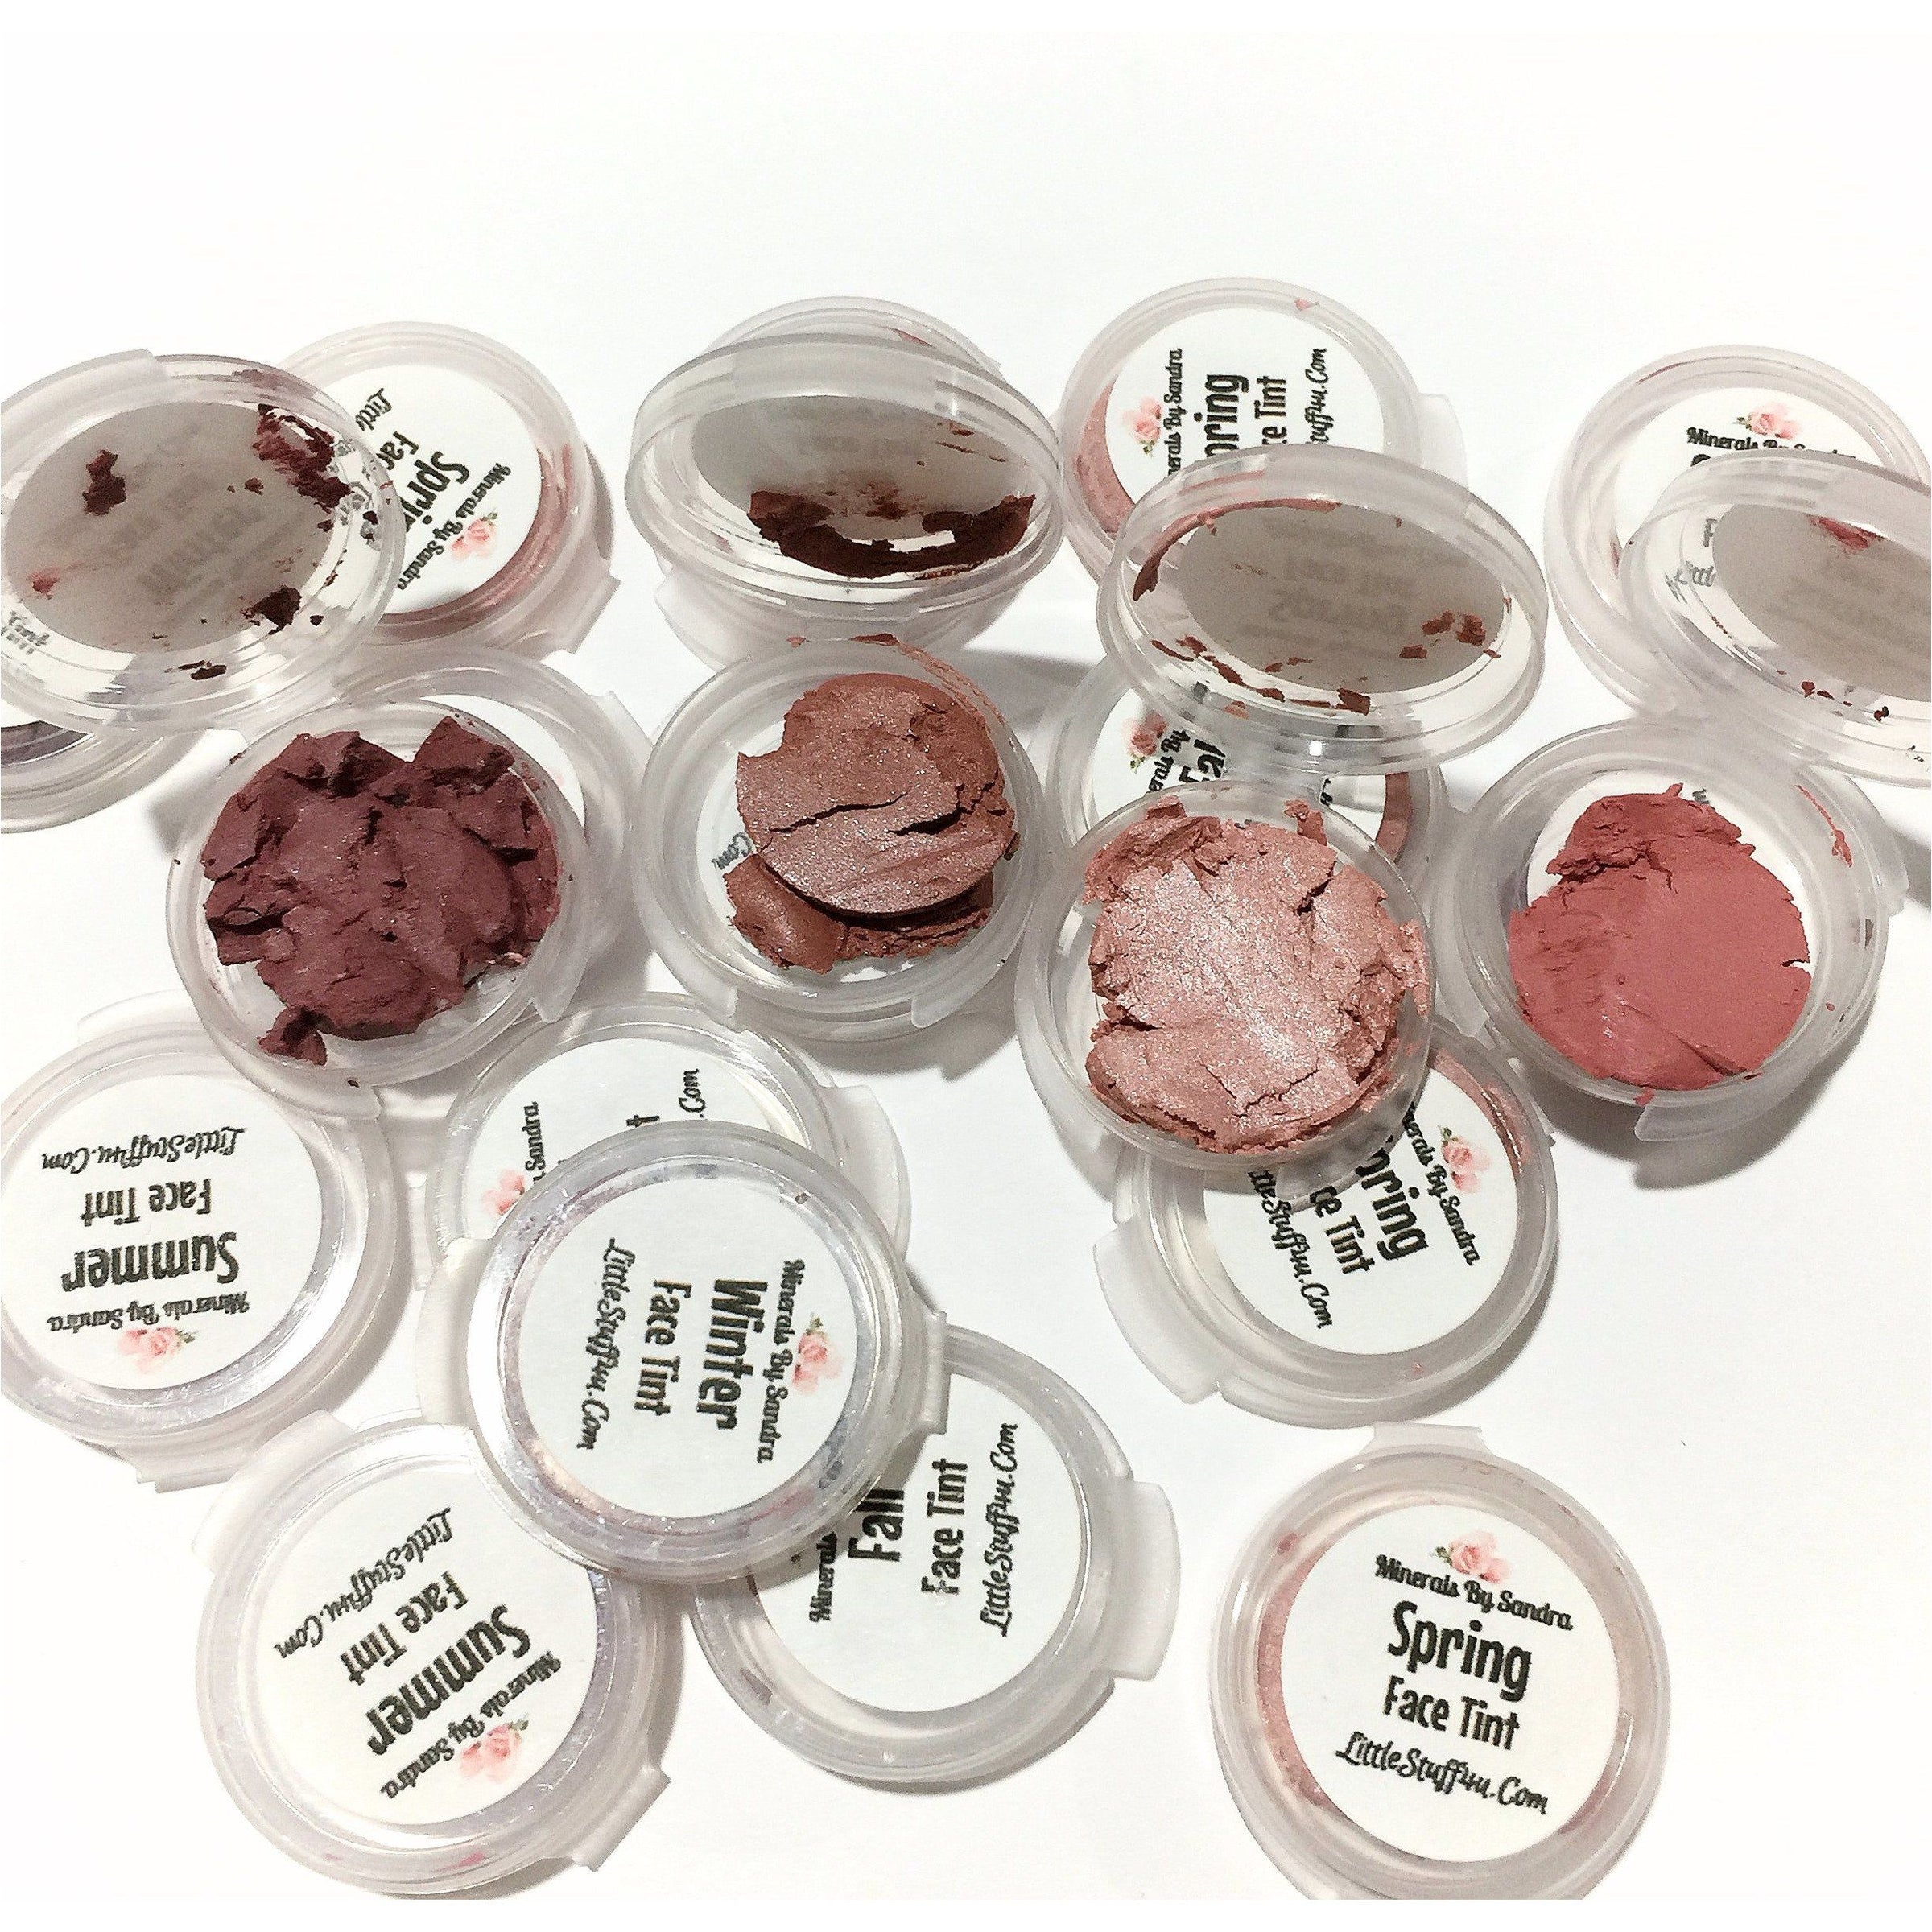 Organic Lip Cheek Tint Samples - LittleStuff4u Minerals